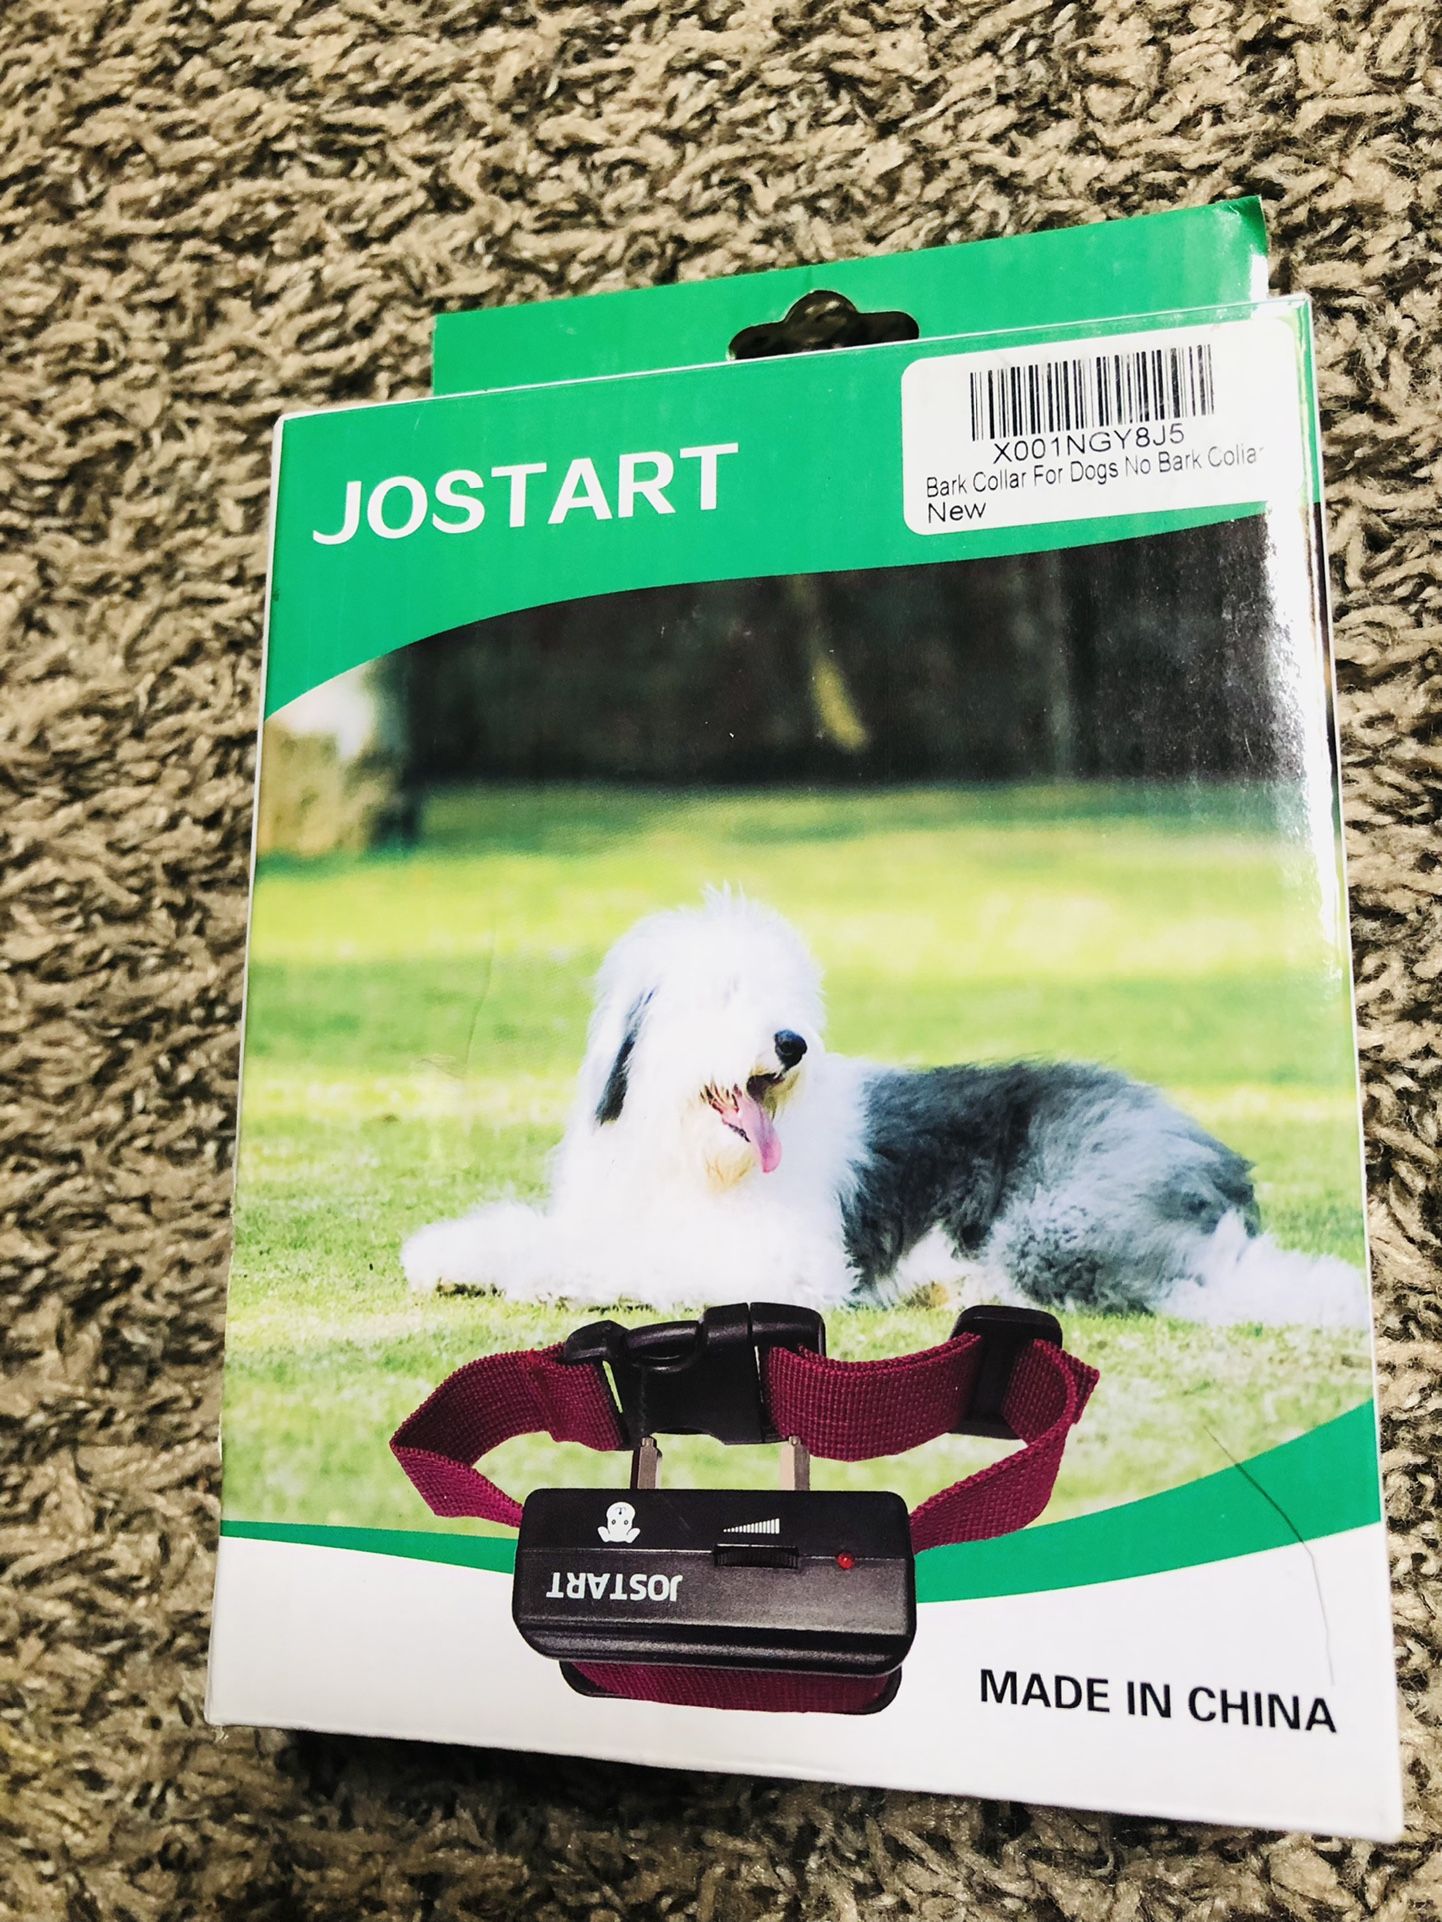 New joestar bark collar for dogs no bark collar